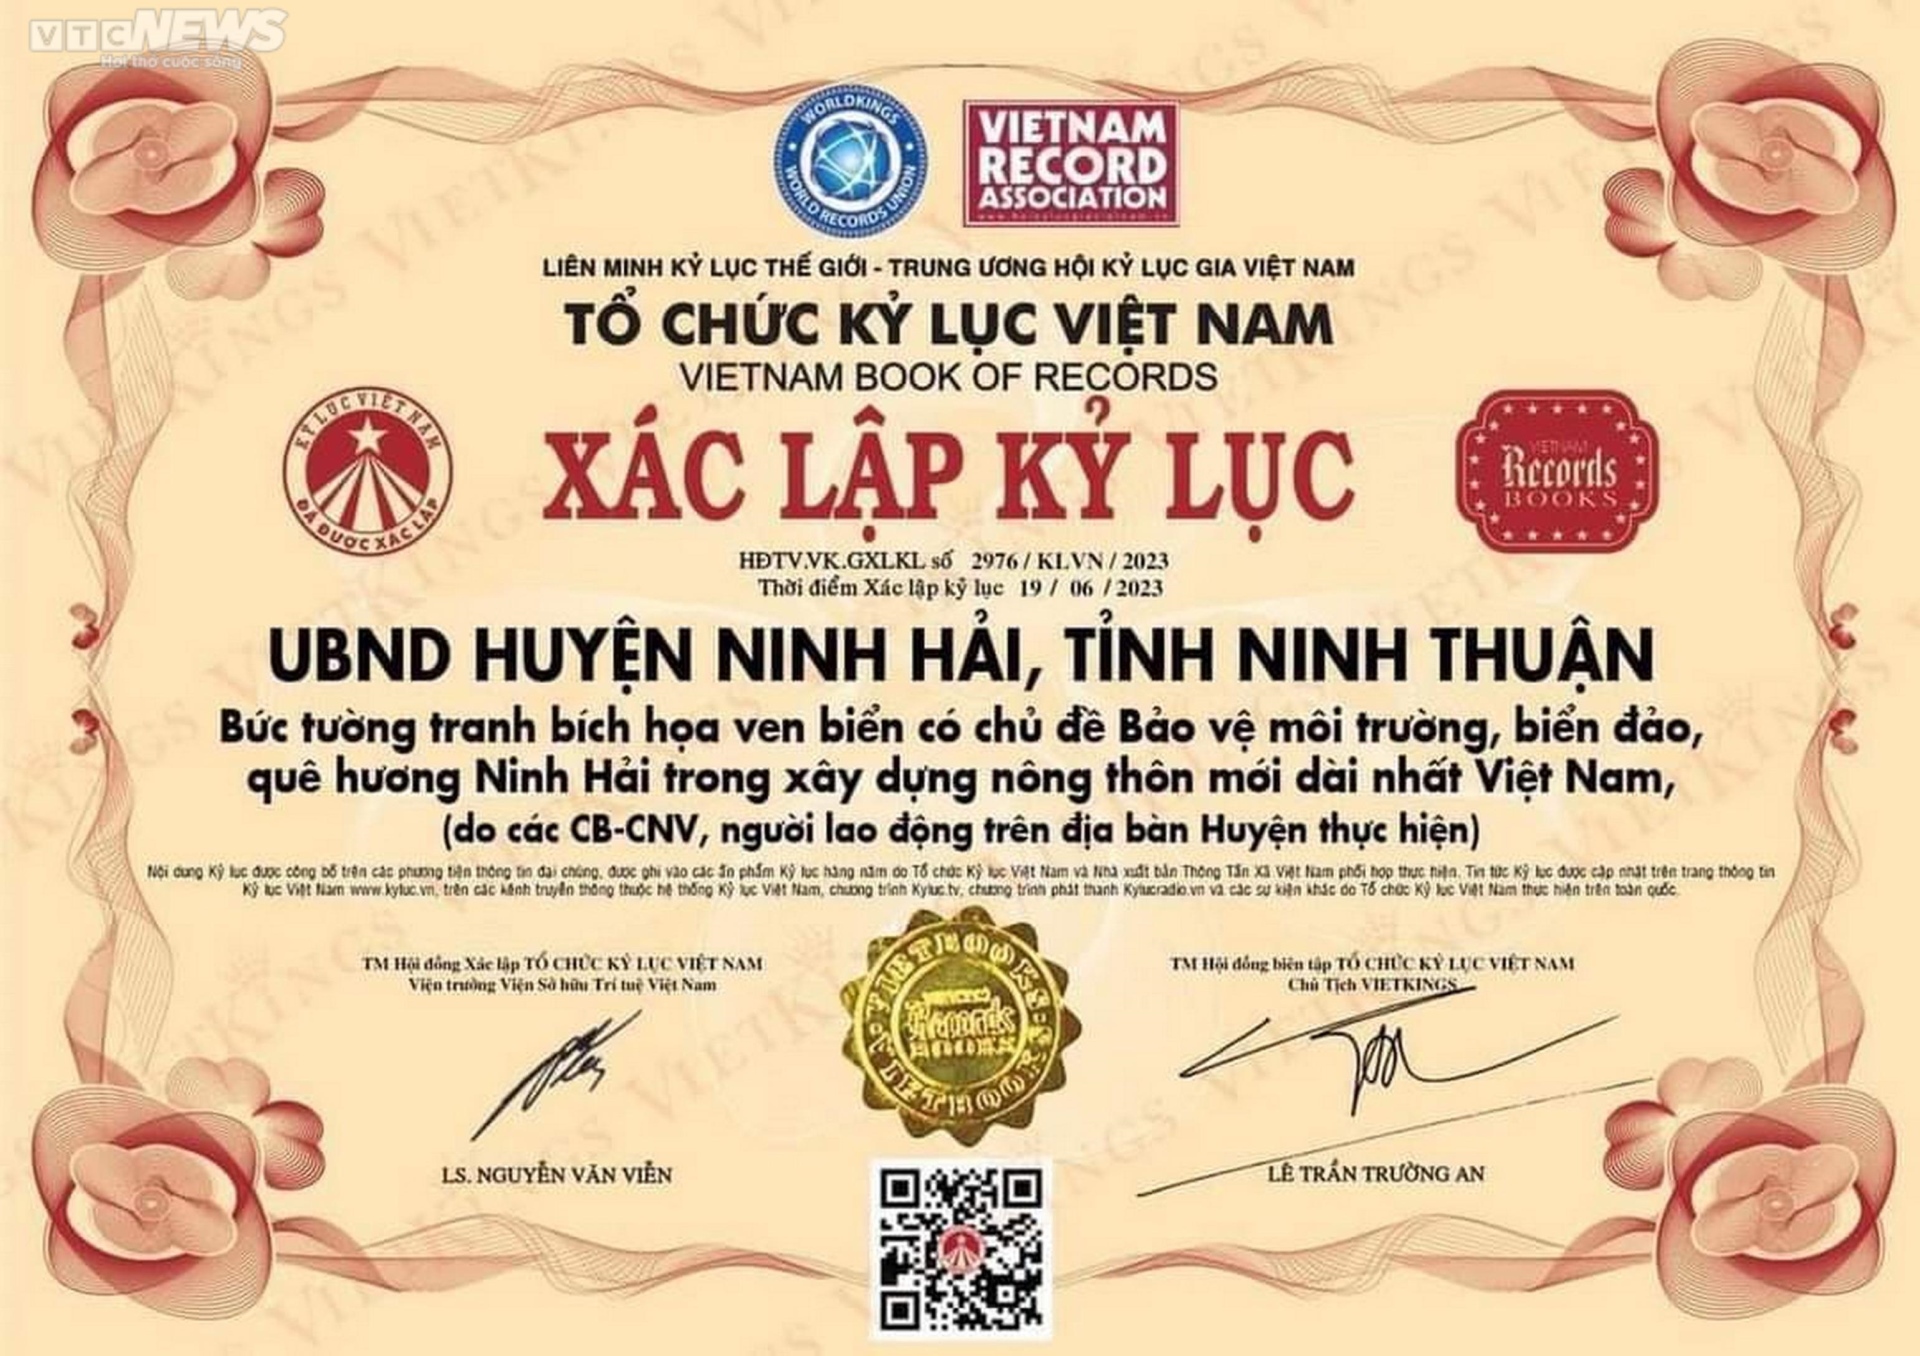 Chiêm ngưỡng bức tường tranh bích họa ven biển Ninh Thuận xác lập kỷ lục Việt Nam - Ảnh 16.